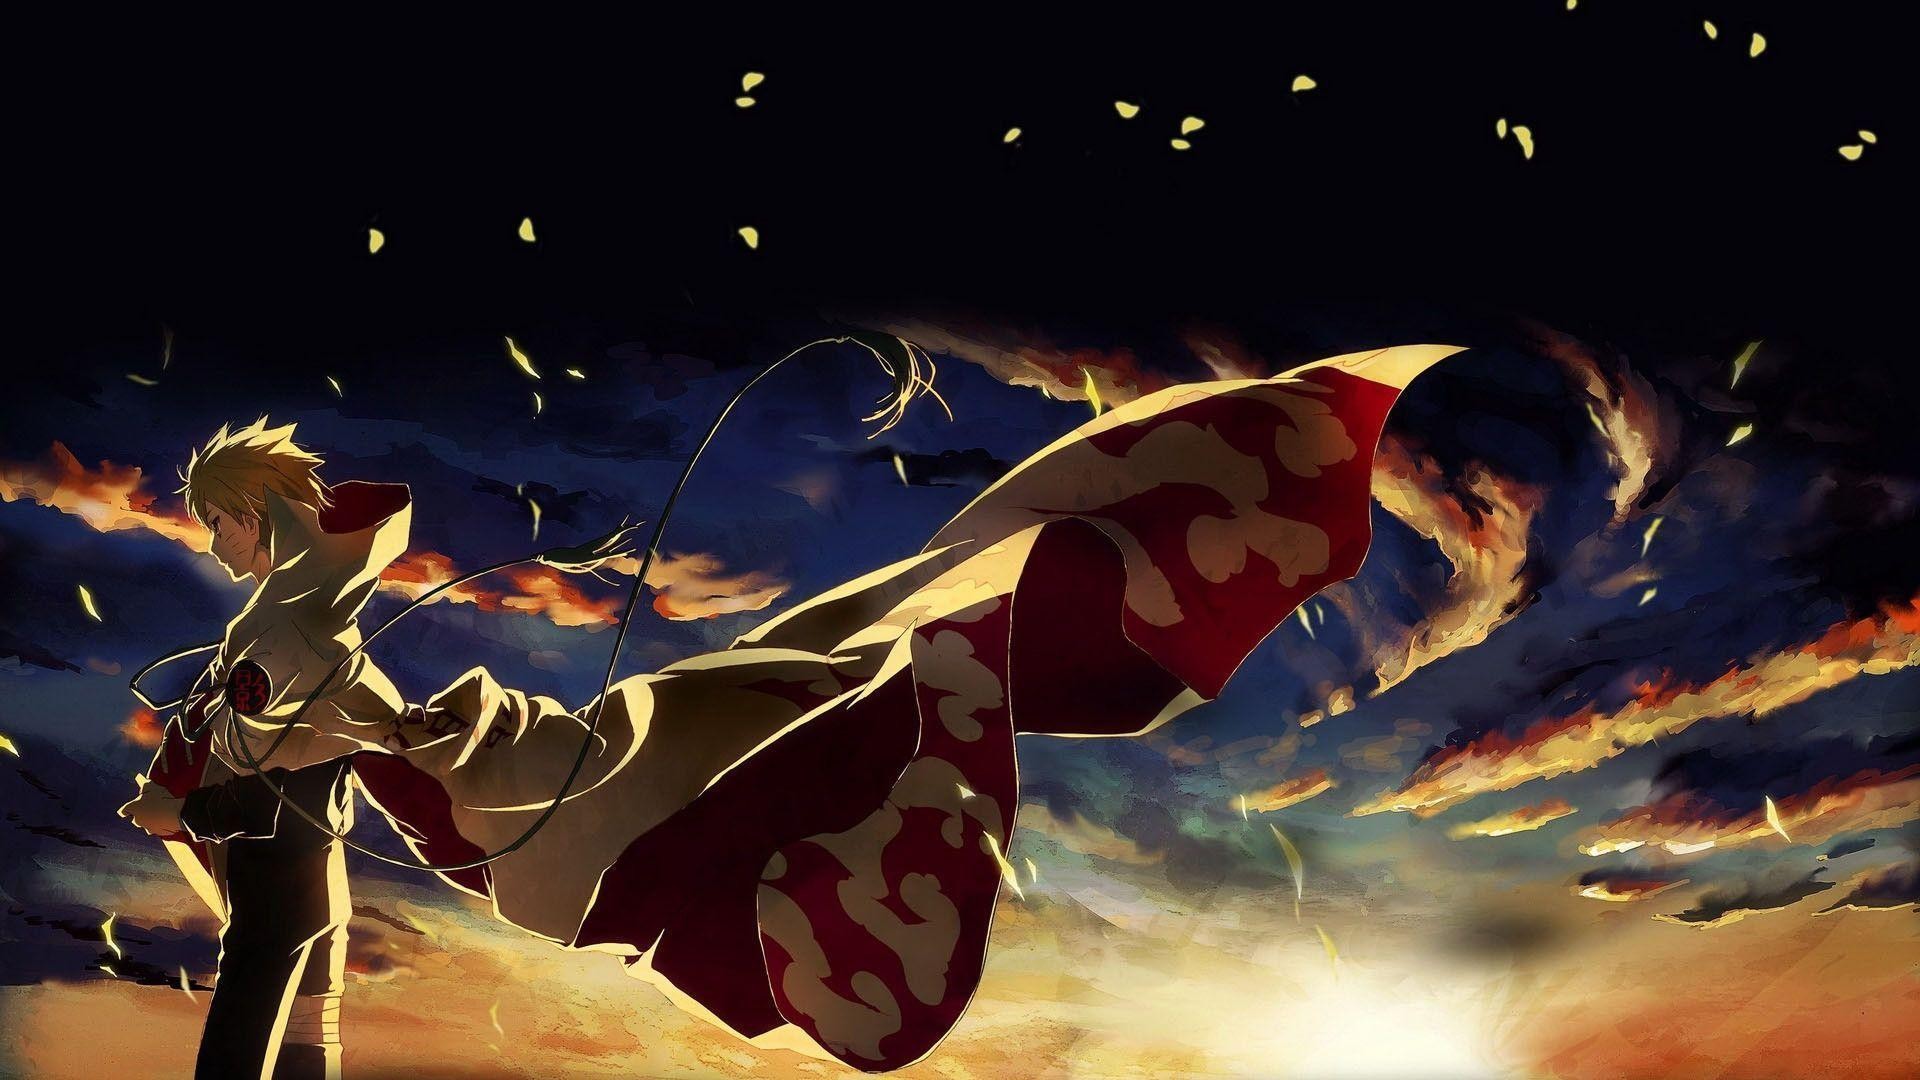 アニメ壁紙1600x900,cgアートワーク,架空の人物,空,スーパーヒーロー,図